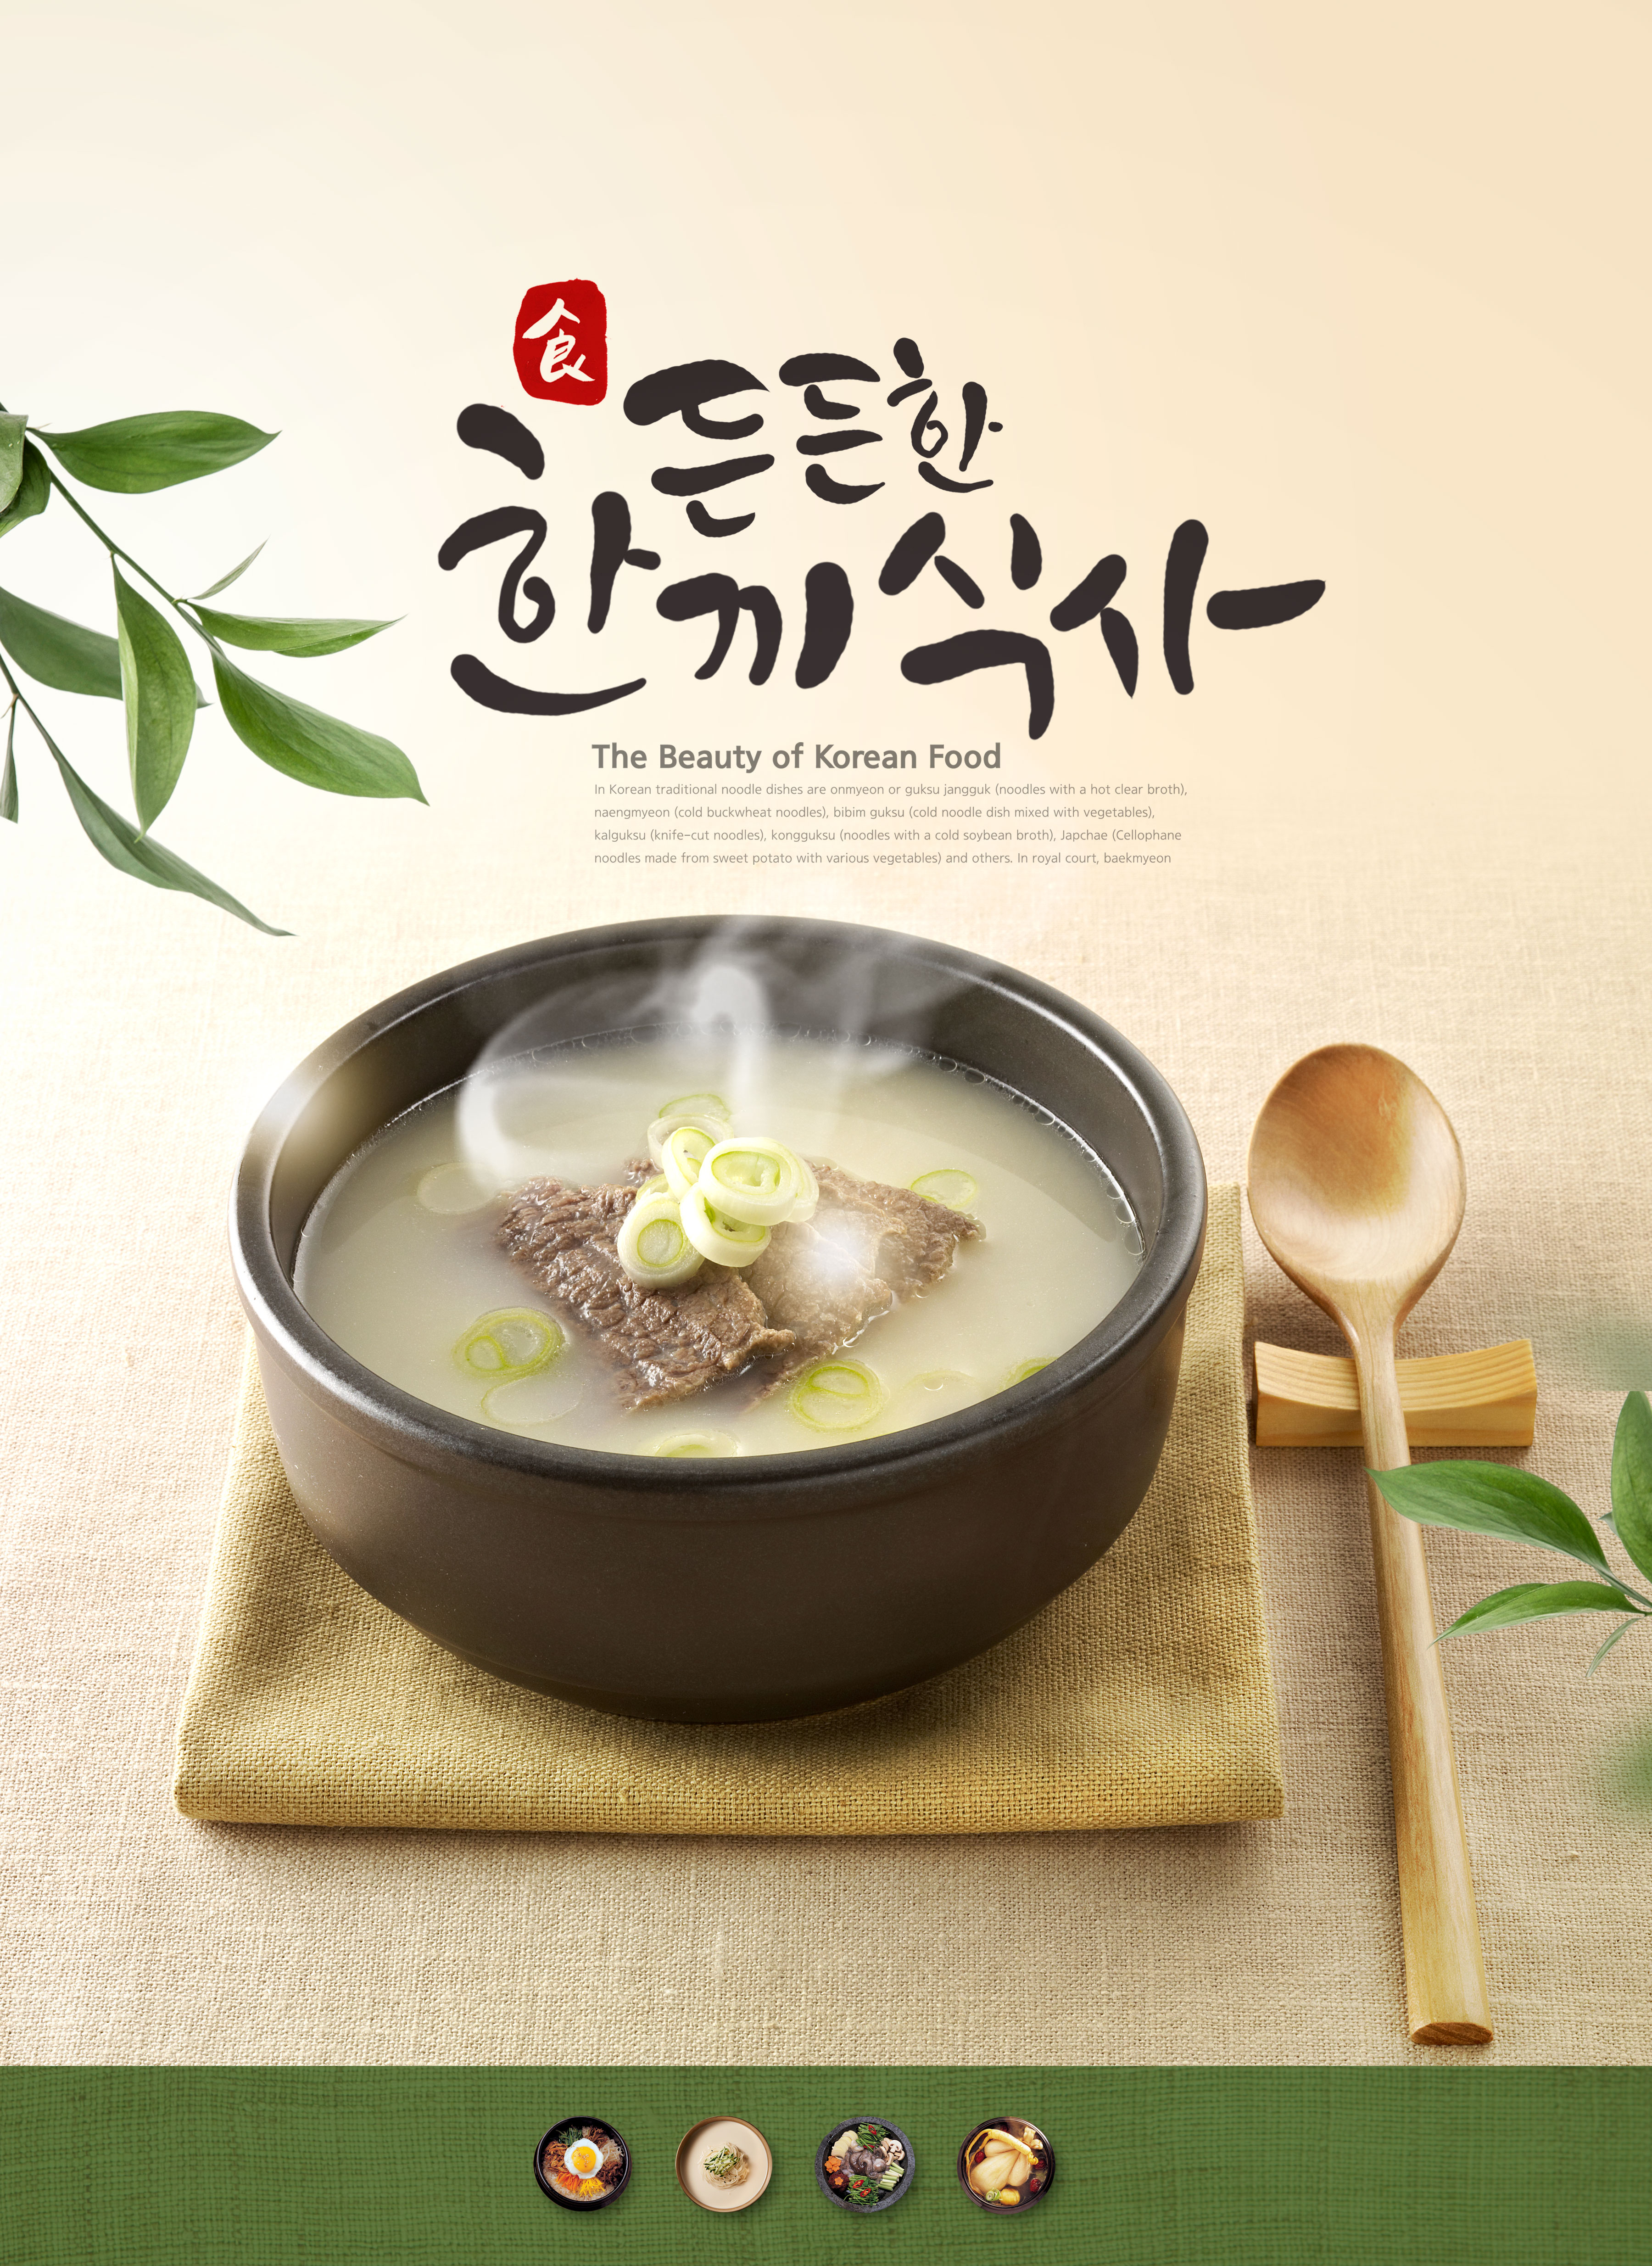 韩国美食餐厅推广广告海报设计素材插图